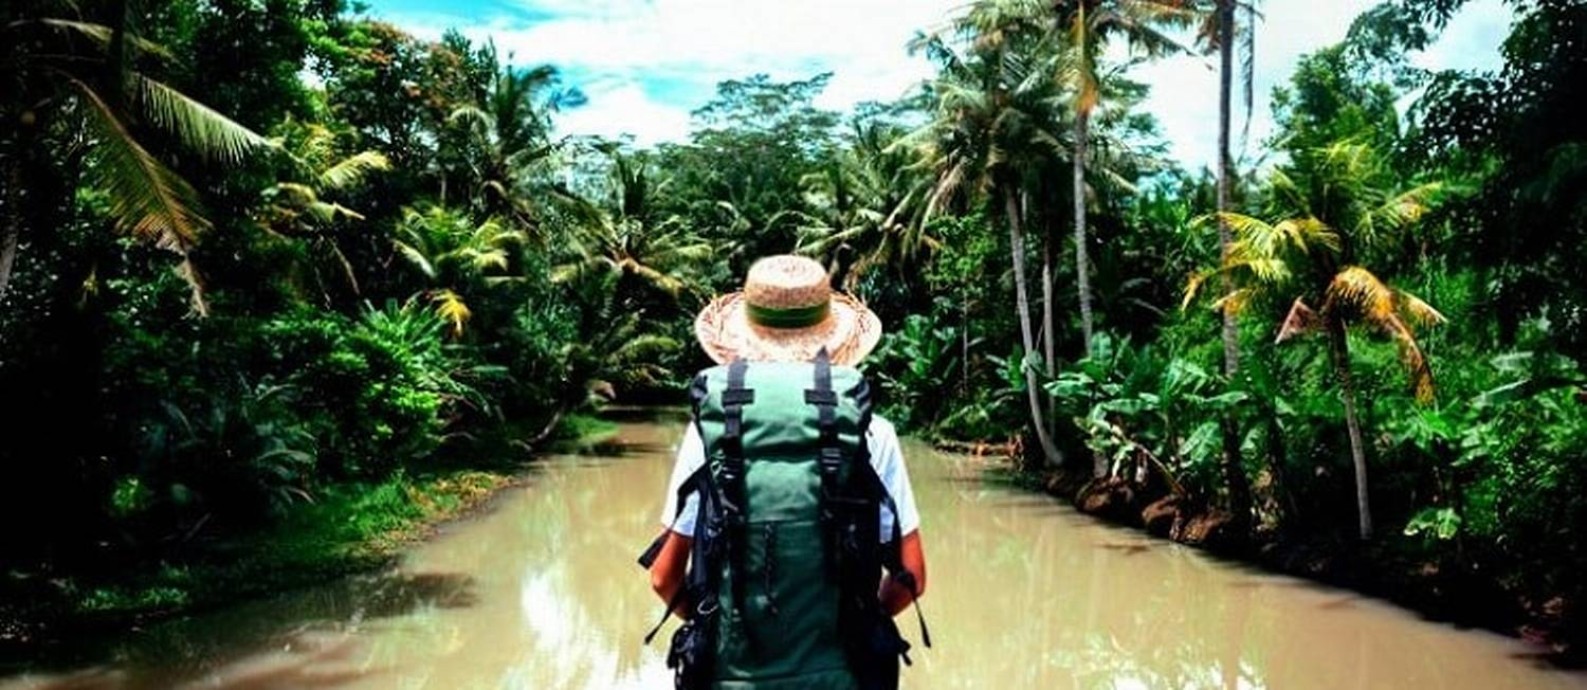 Turismo sustentável: uma das opções do viajante depois da pandemia Foto: Creative Commons